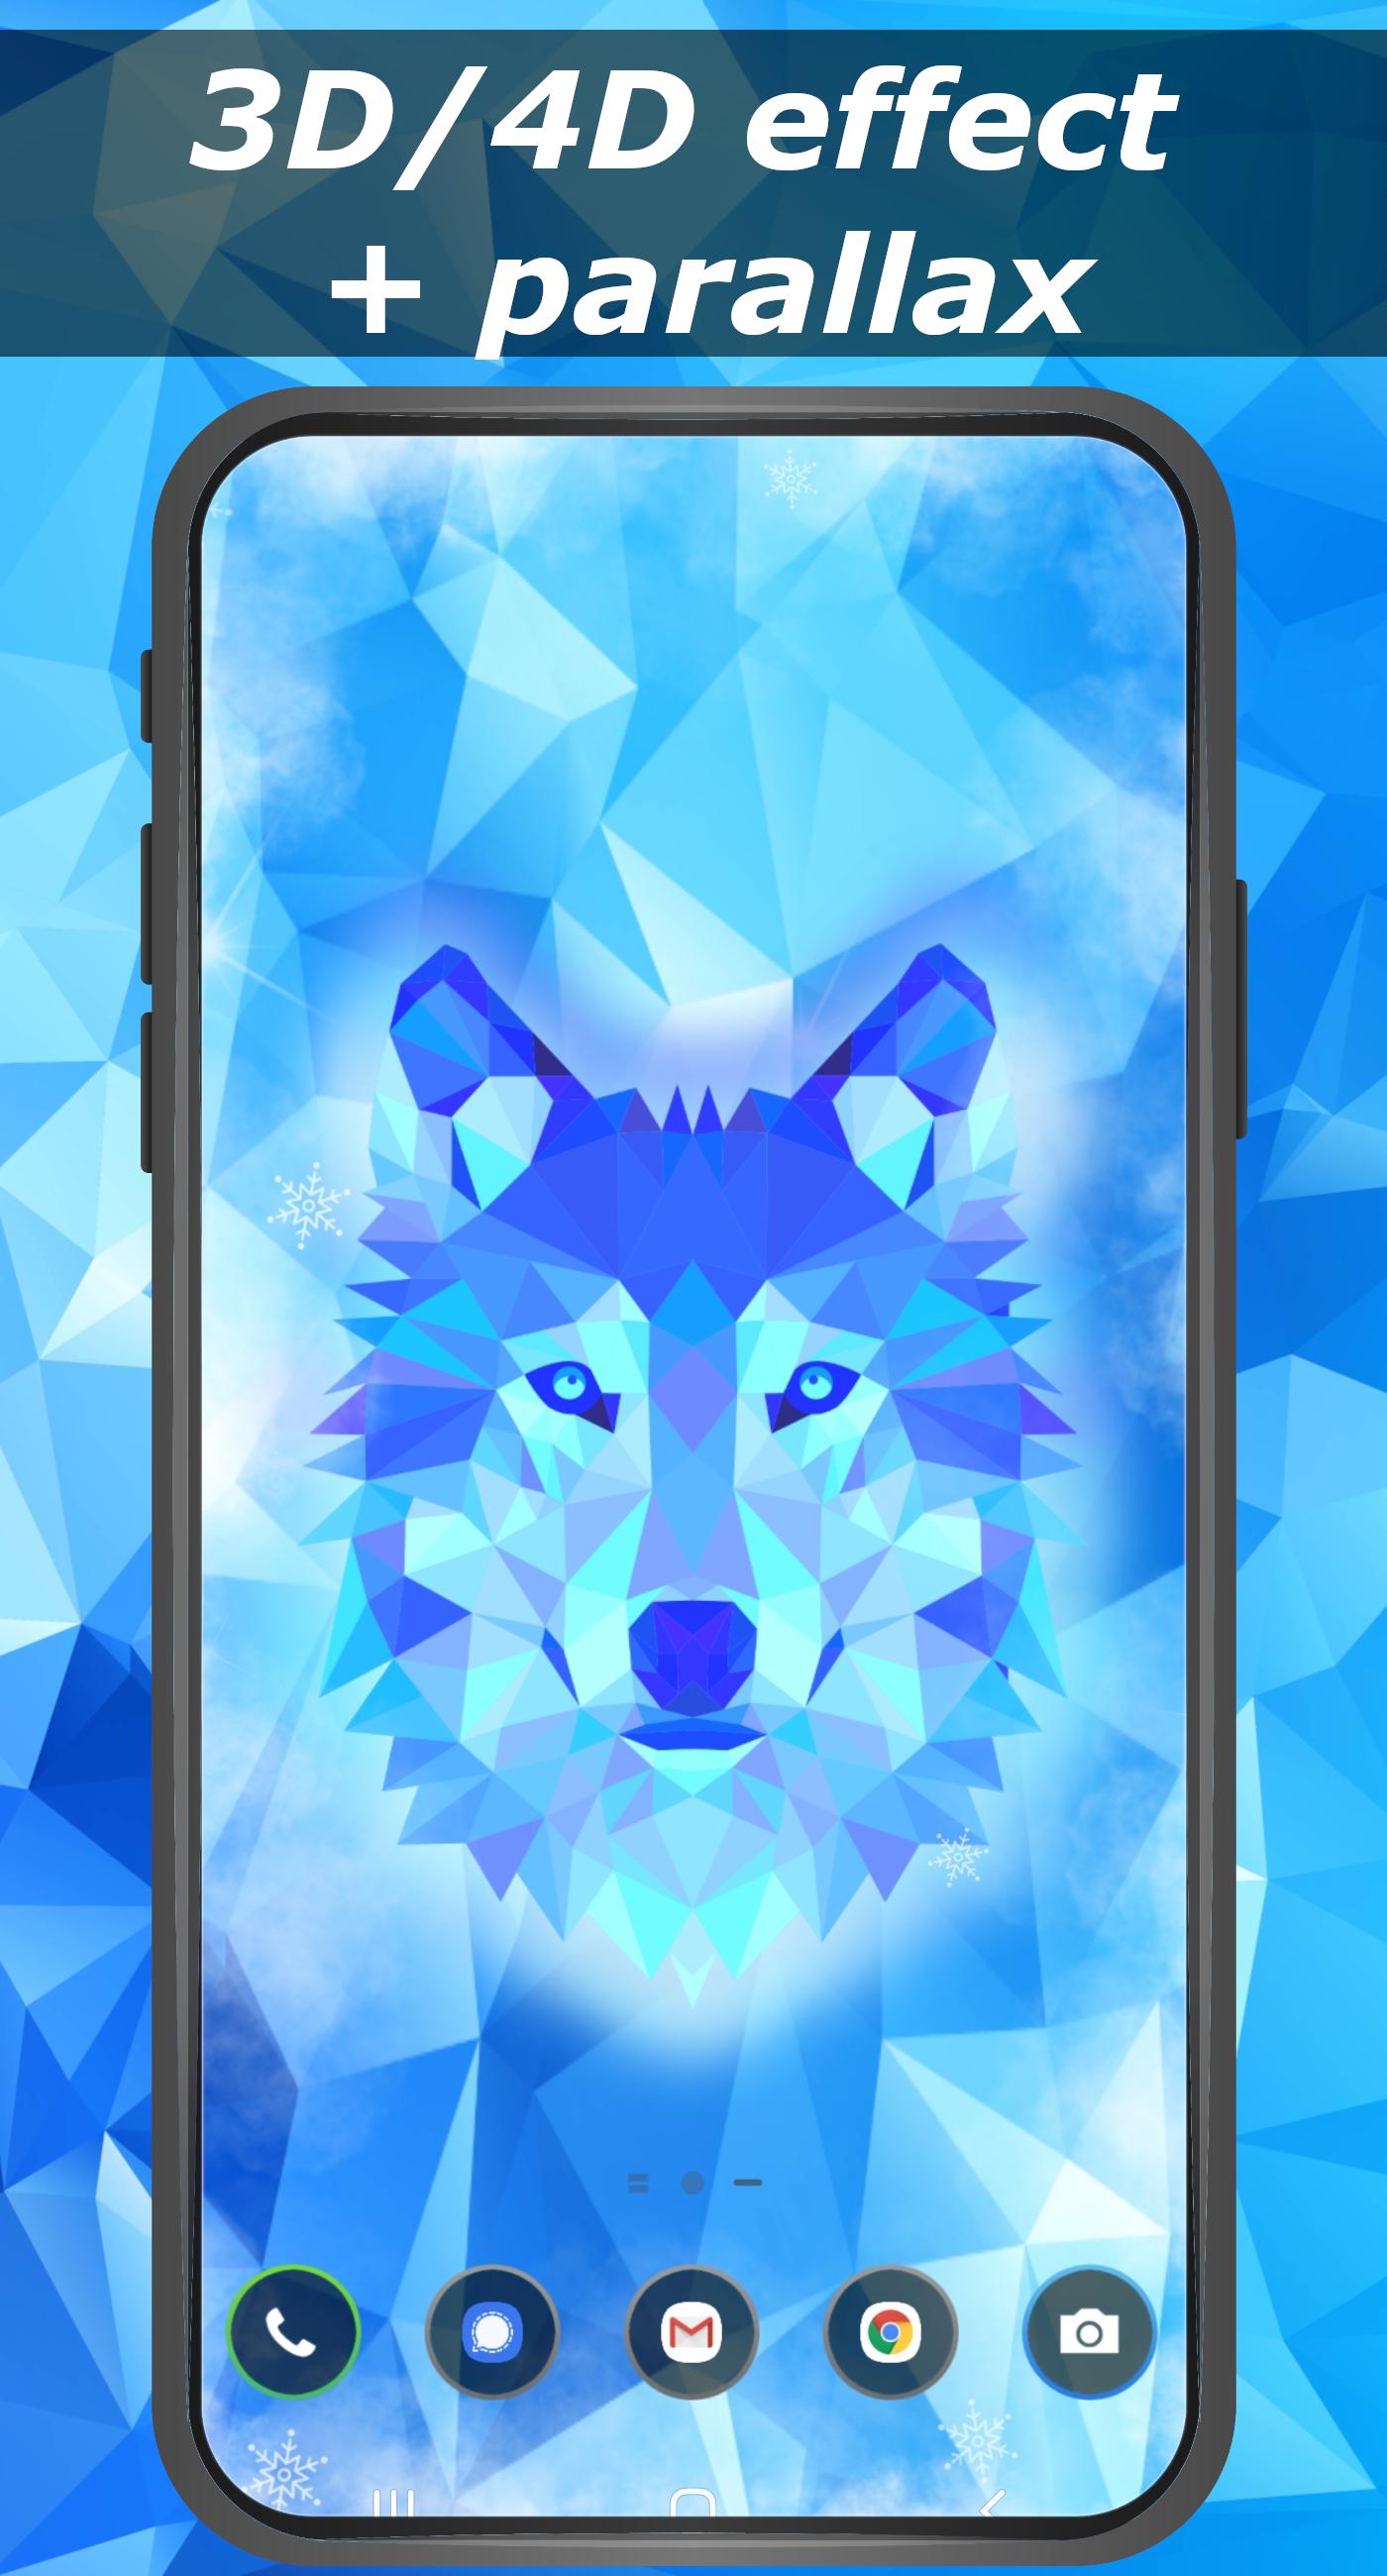 Ice wolf wallpaper 3D - parallax 4D backgrounds 1.0 Screenshot 10